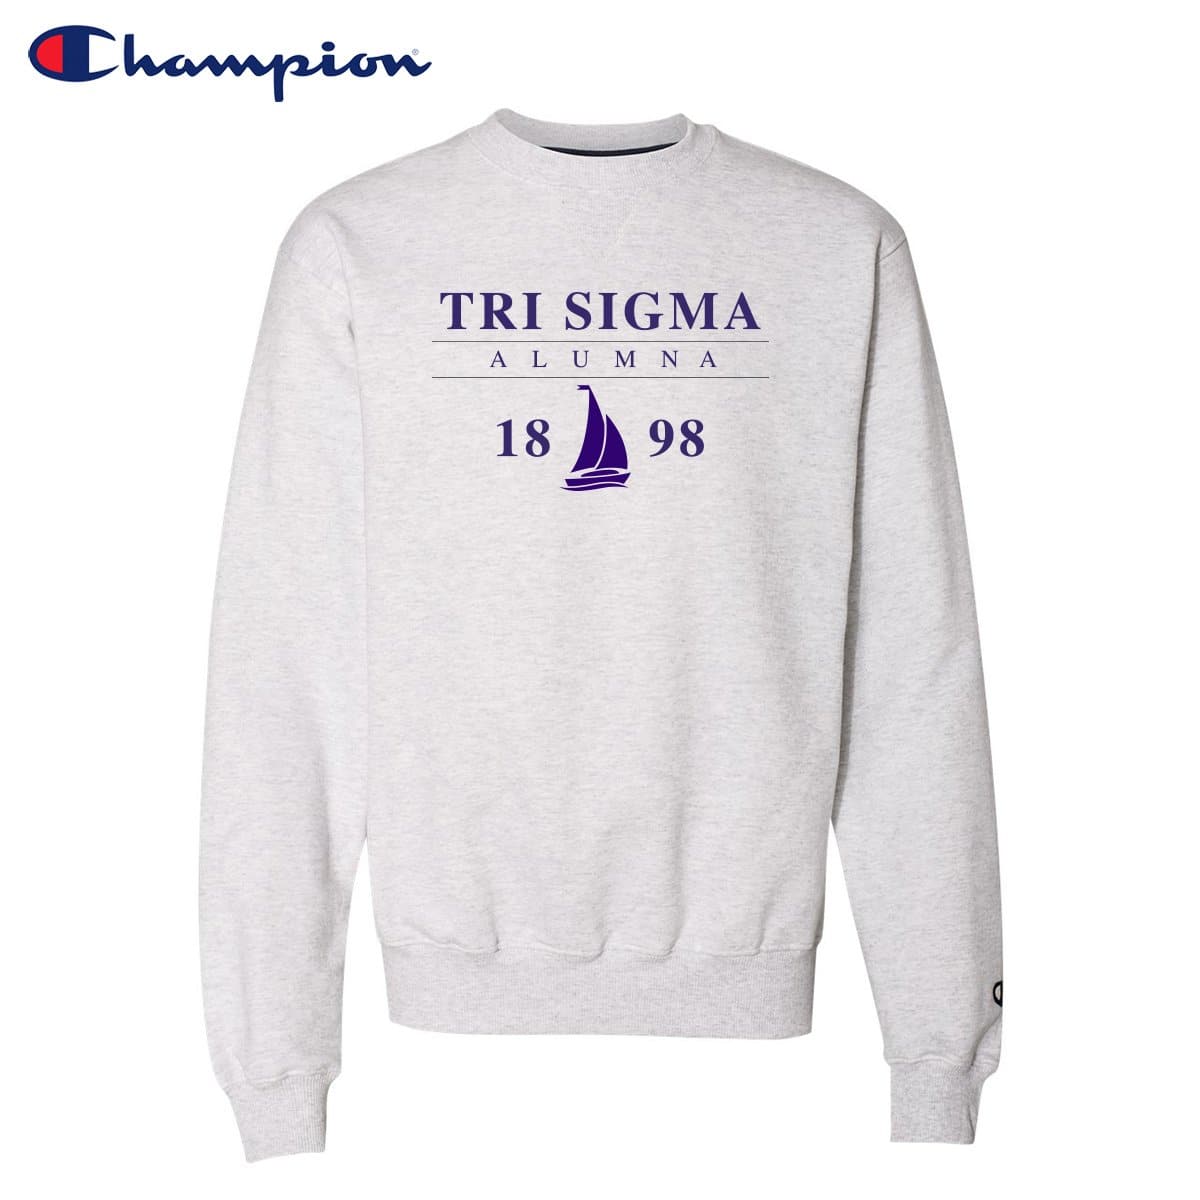 Tri Sigma Alumni Champion Sweatshirt | Sigma Sigma Sigma | Sweatshirts > Crewneck sweatshirts